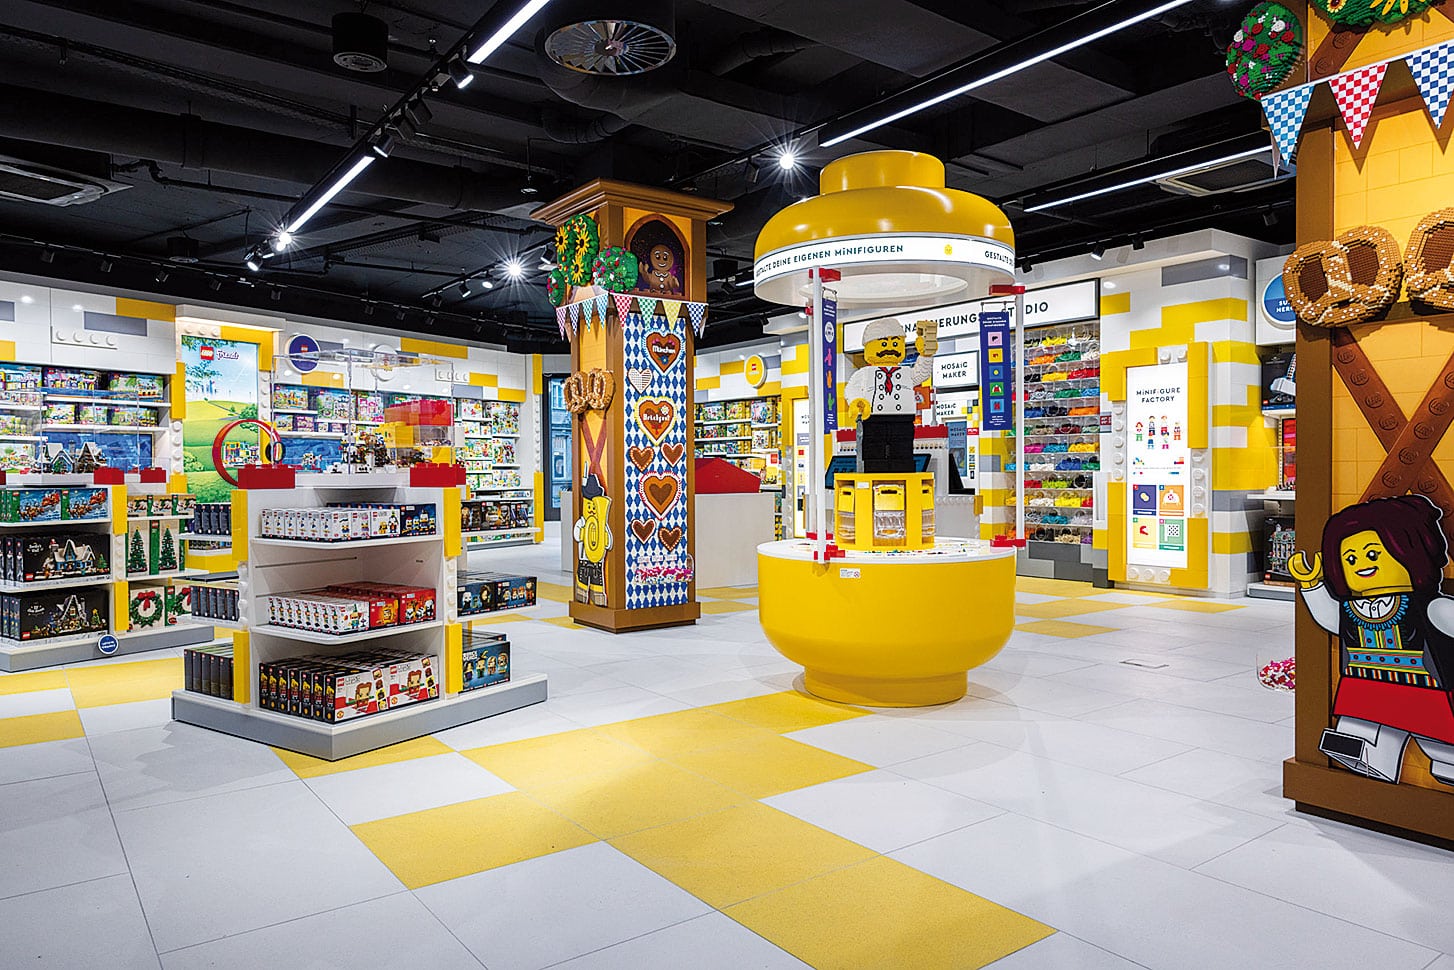 Lego integriert physische und digitale Spielerlebnisse in seinen Geschäften. Im Bild der neu eröffnete Lego Store in München